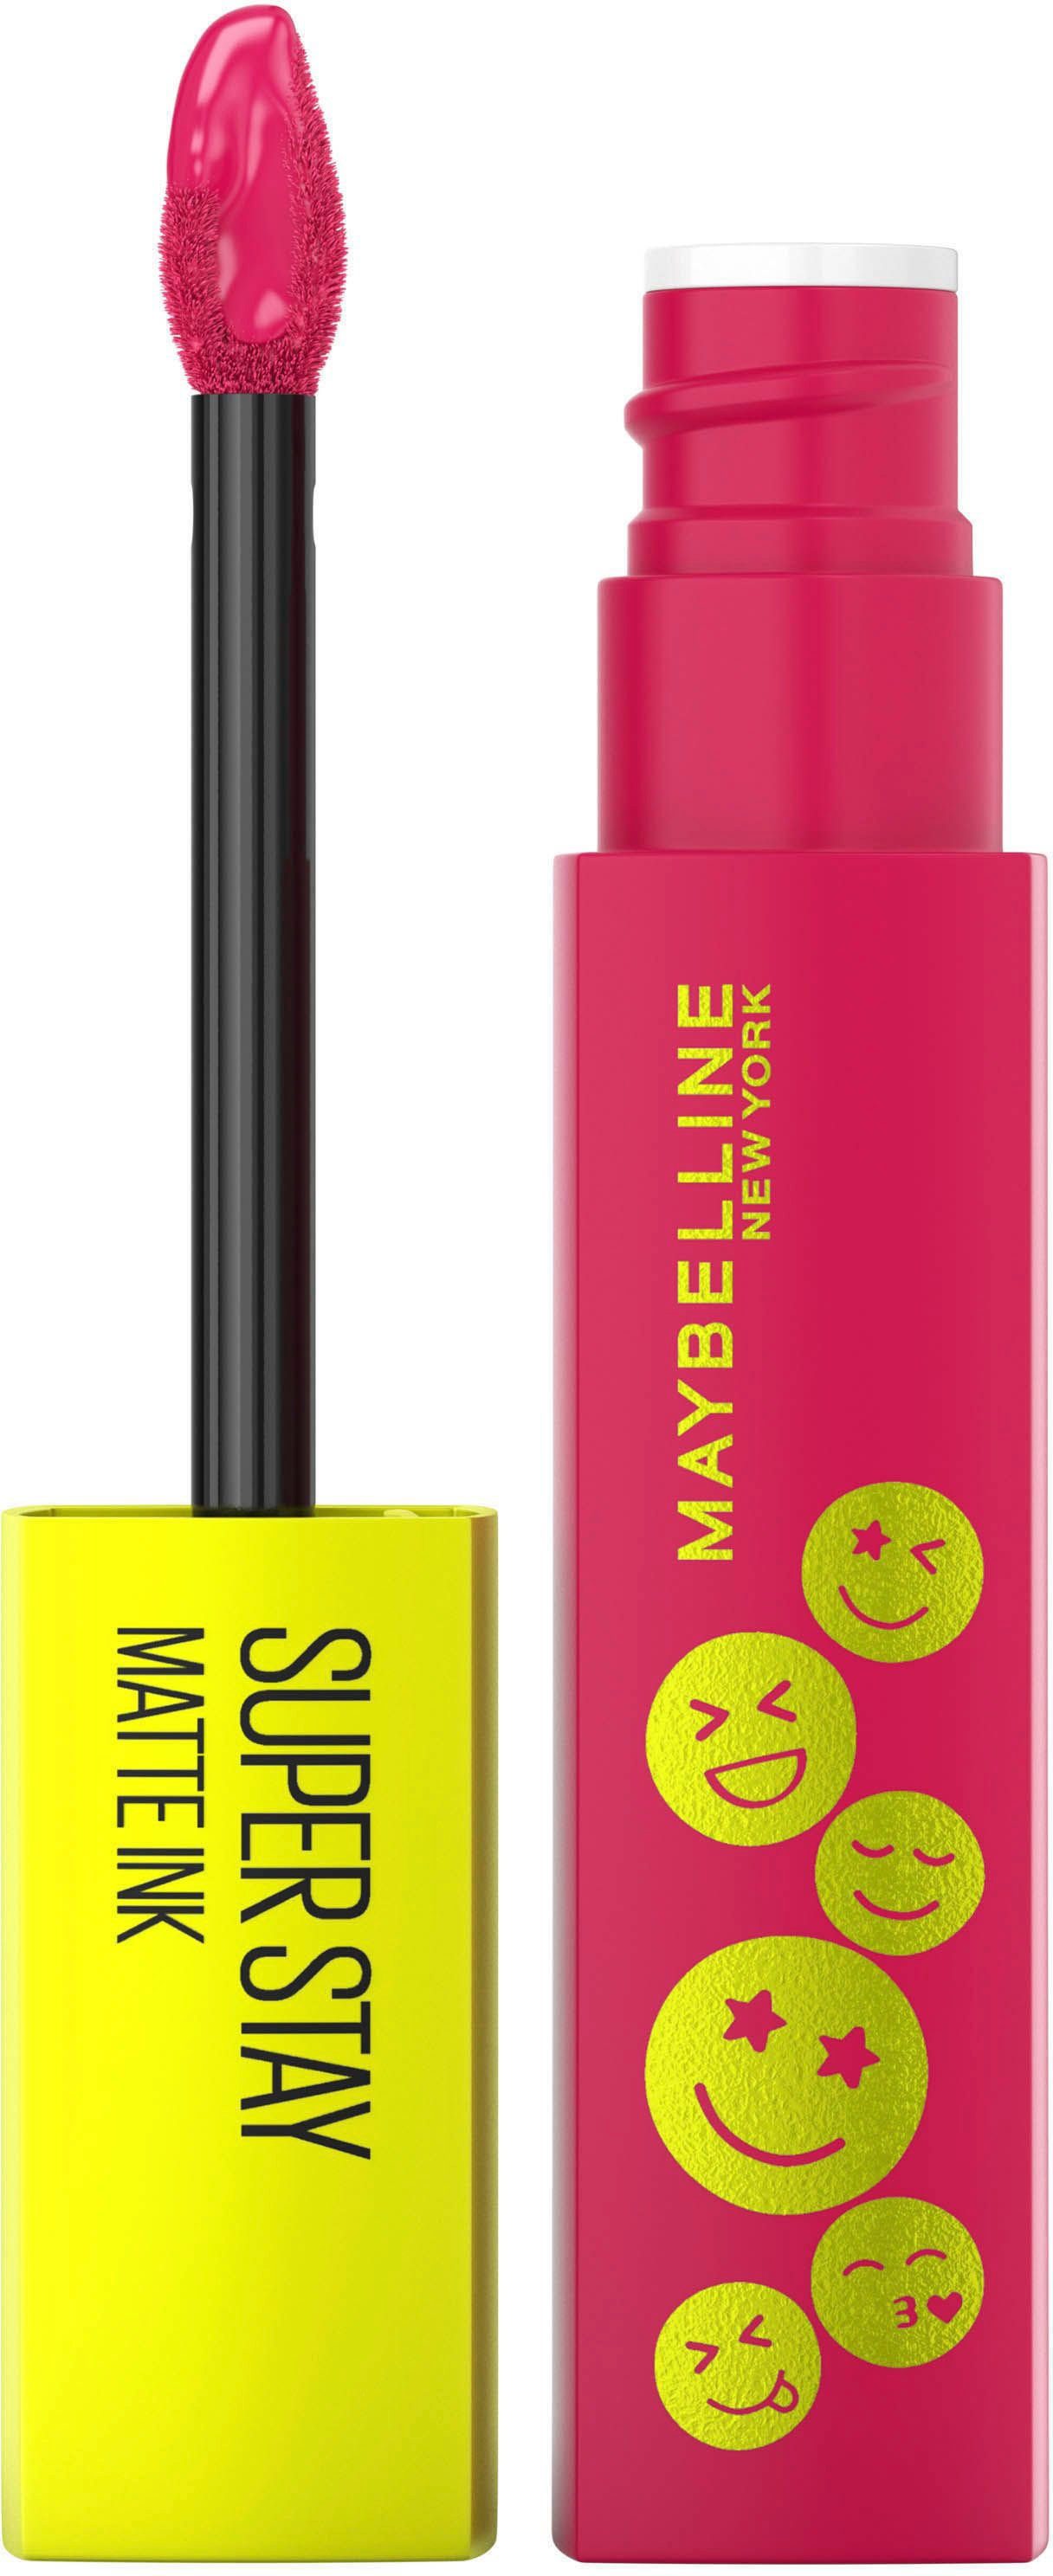 MAYBELLINE NEW YORK Lippenstift Maybelline Finish Ink Lippenstift, Super mit Farbpigmente York Matte mattem angesagtem New Stay Hochkonzentrierte